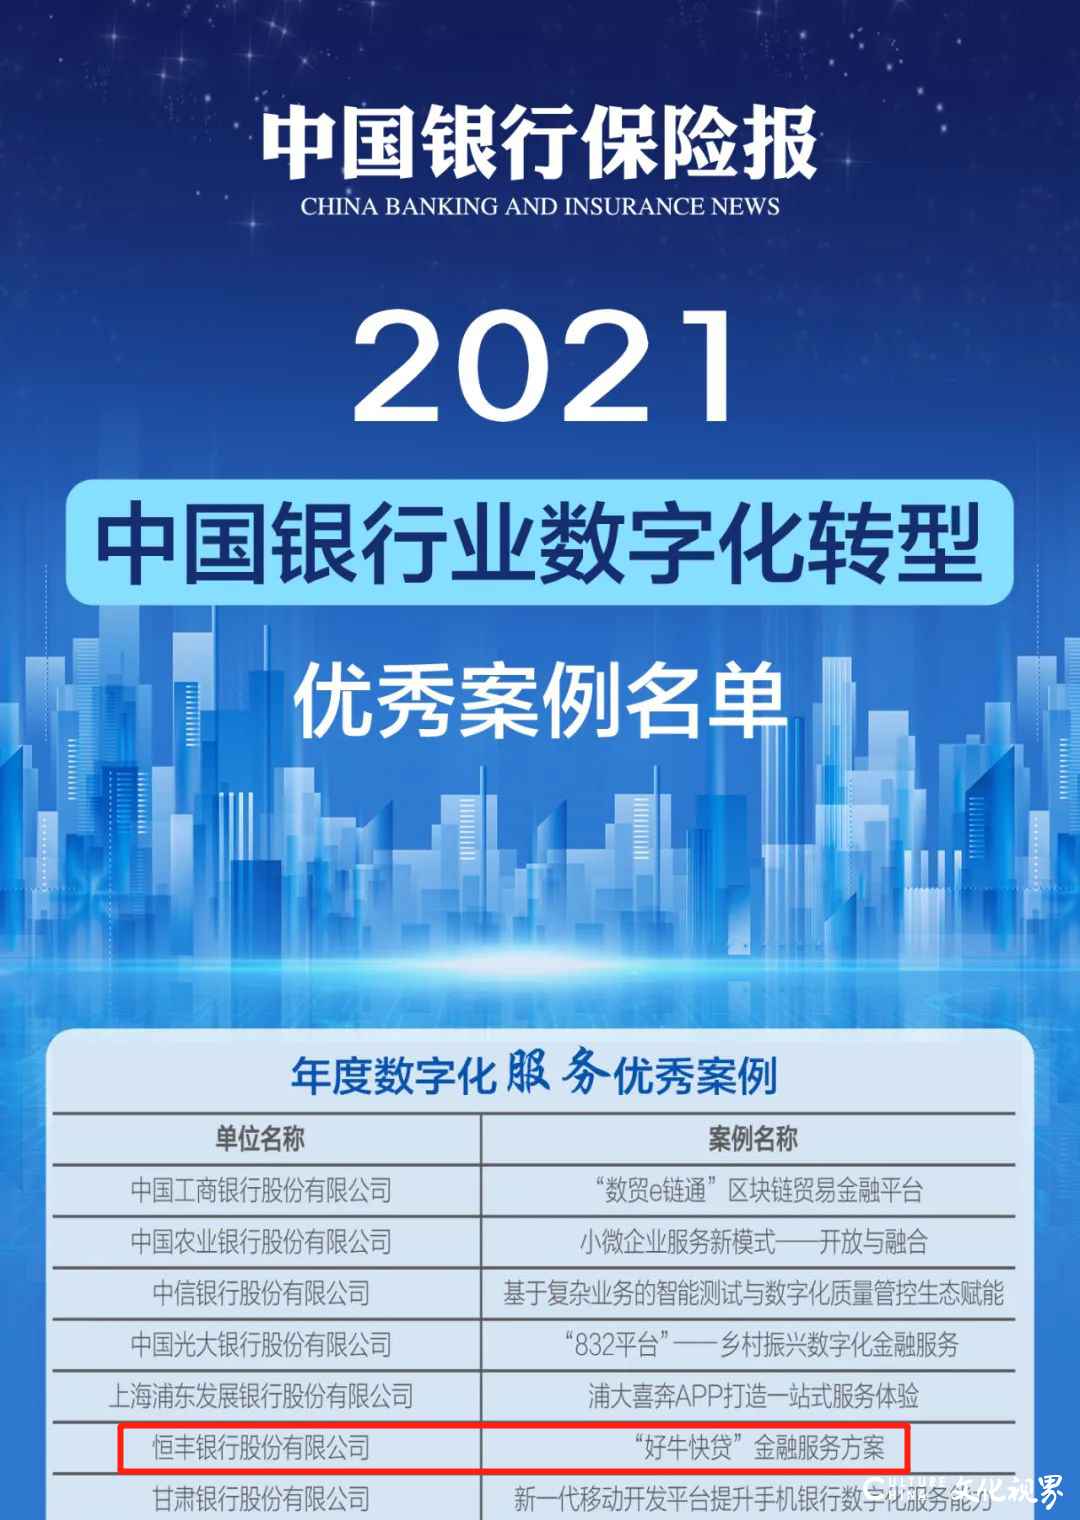 恒丰银行“好牛快贷”获评2021中国银行业数字化转型优秀案例